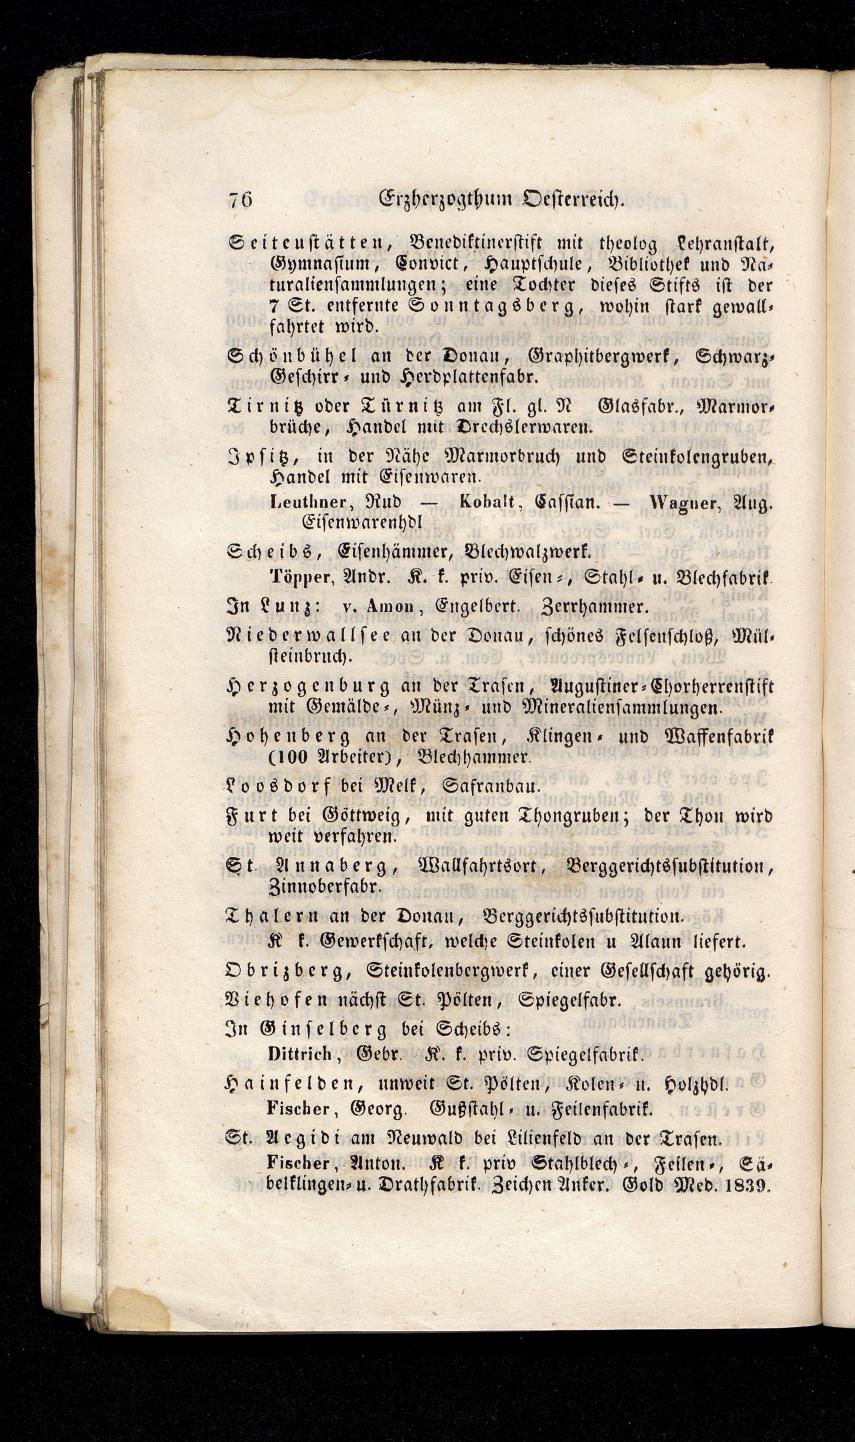 Grosses Adressbuch der Kaufleute. No. 13. Oesterreich ober u. unter der Enns 1844 - Seite 80